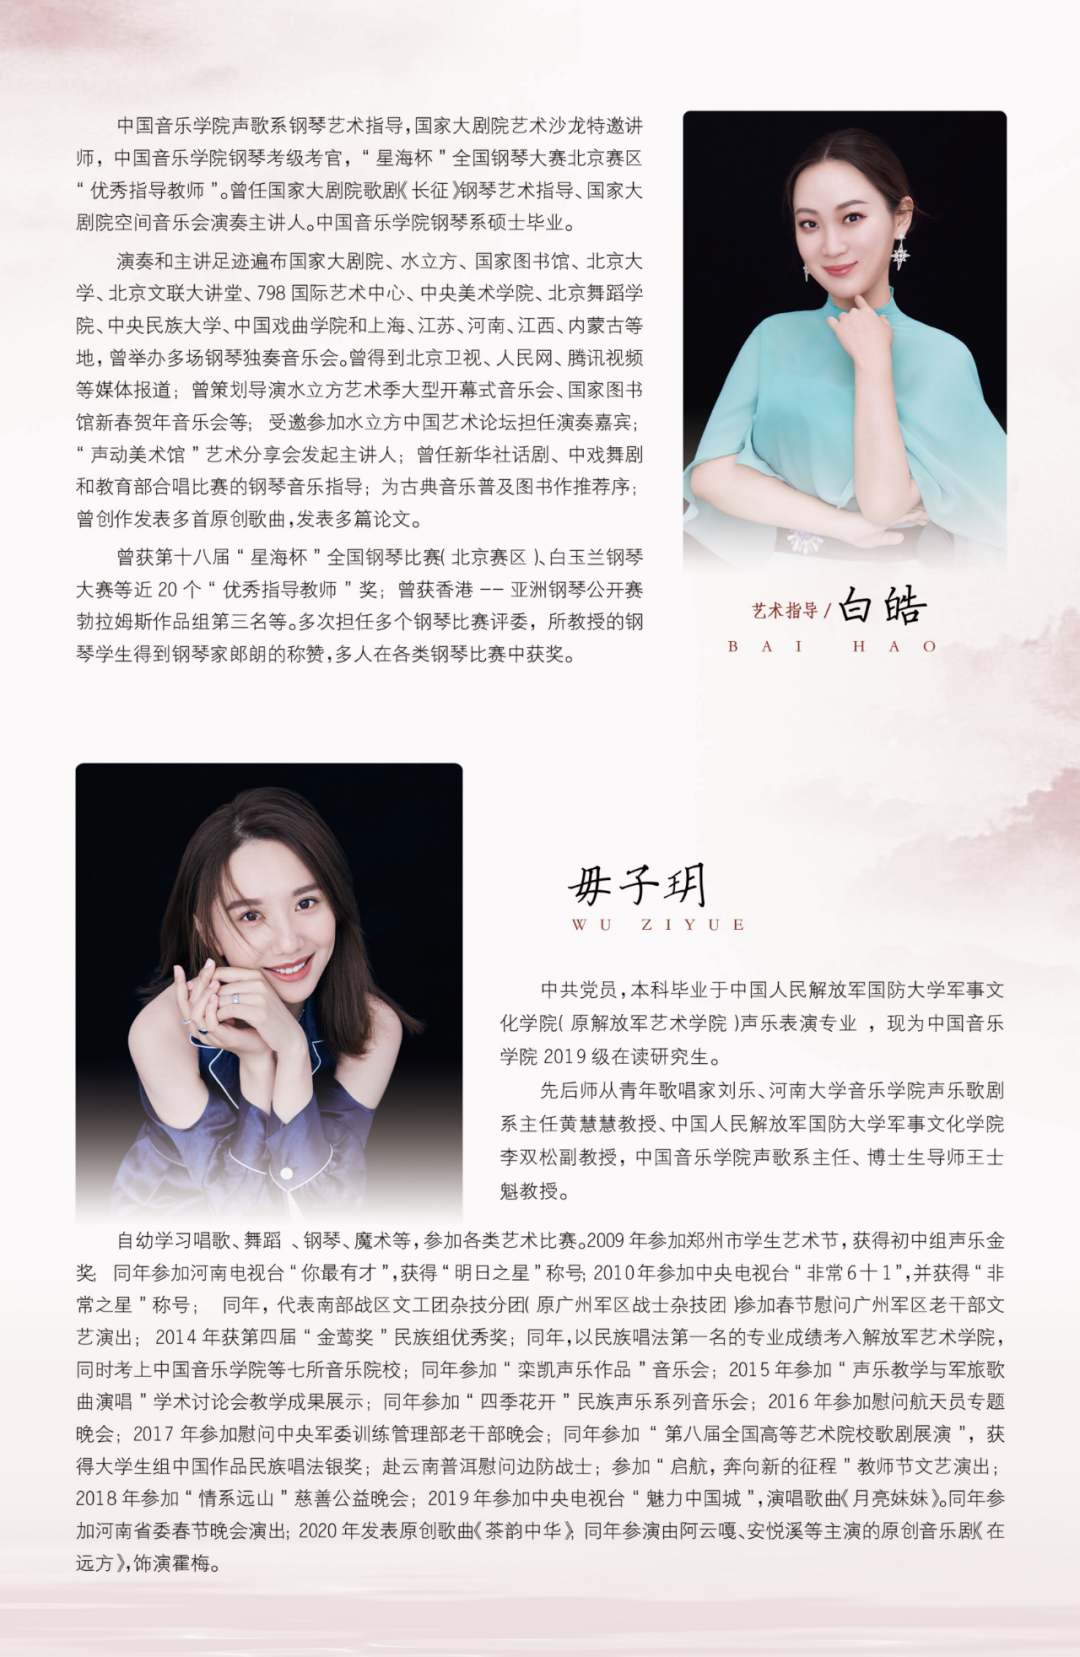 「音乐会预告」毋子玥硕士中期独唱音乐会11月27北京唱响